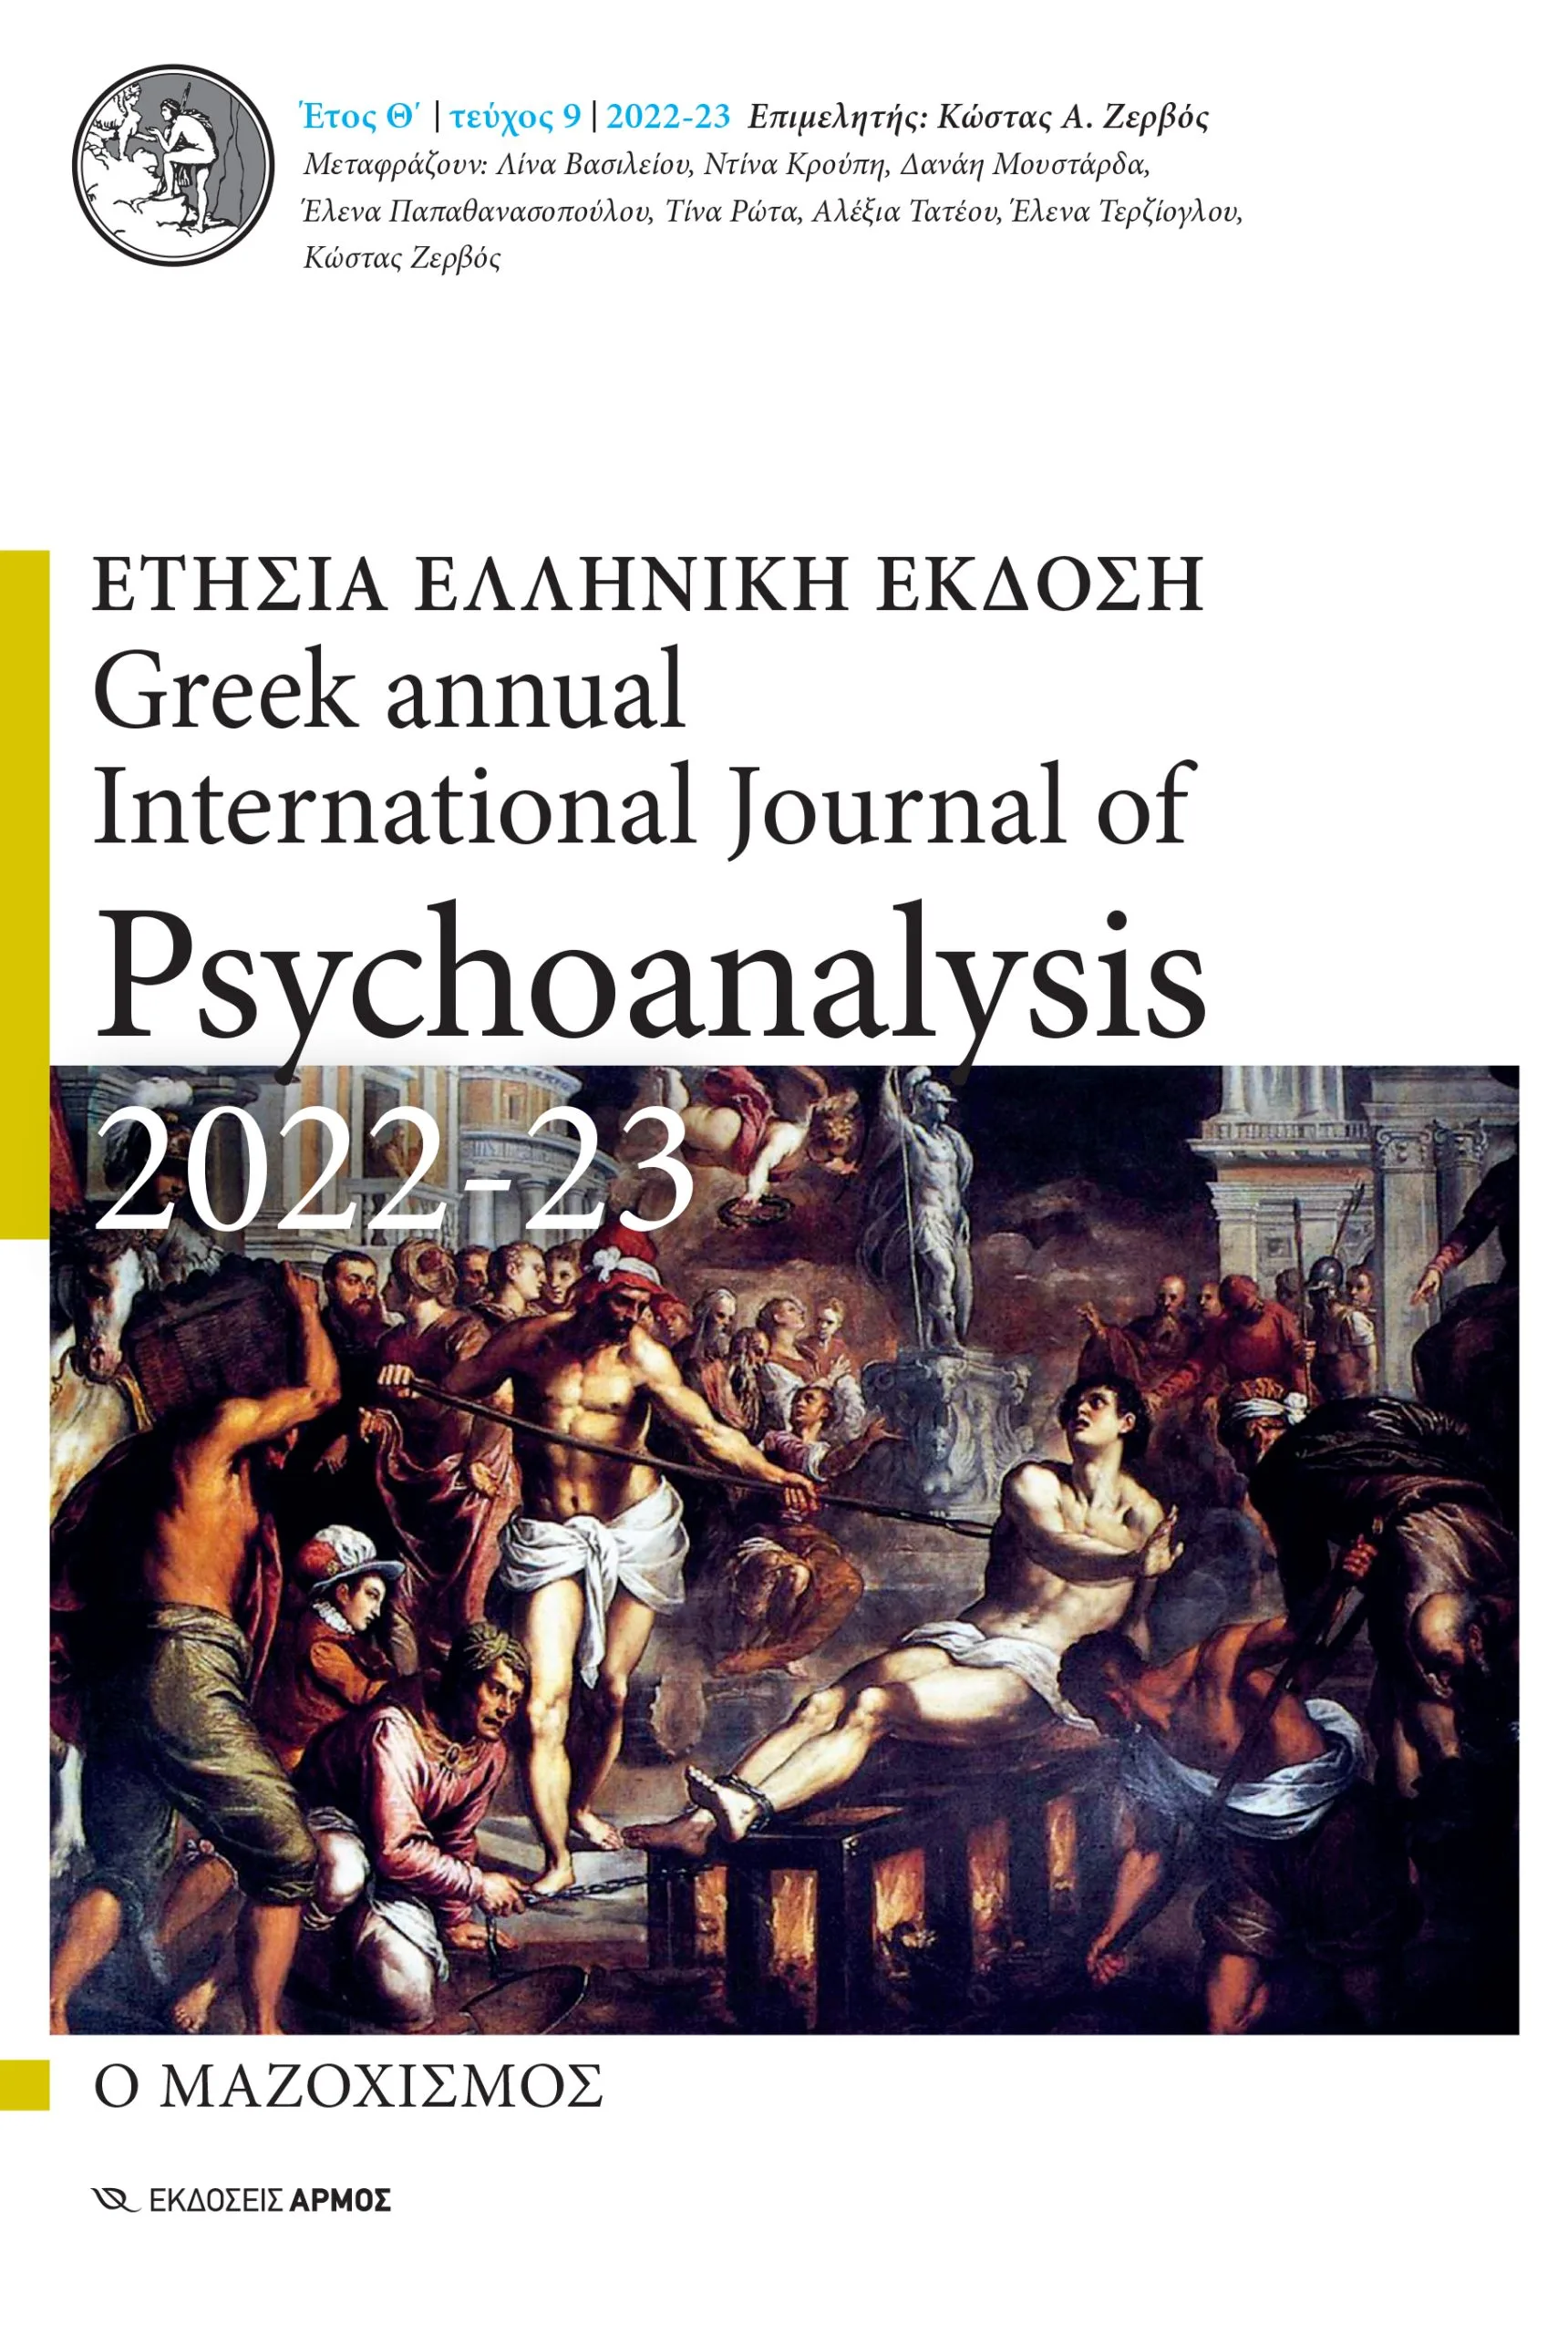 Ετήσια Ελληνική Έκδοση, 2022-2023